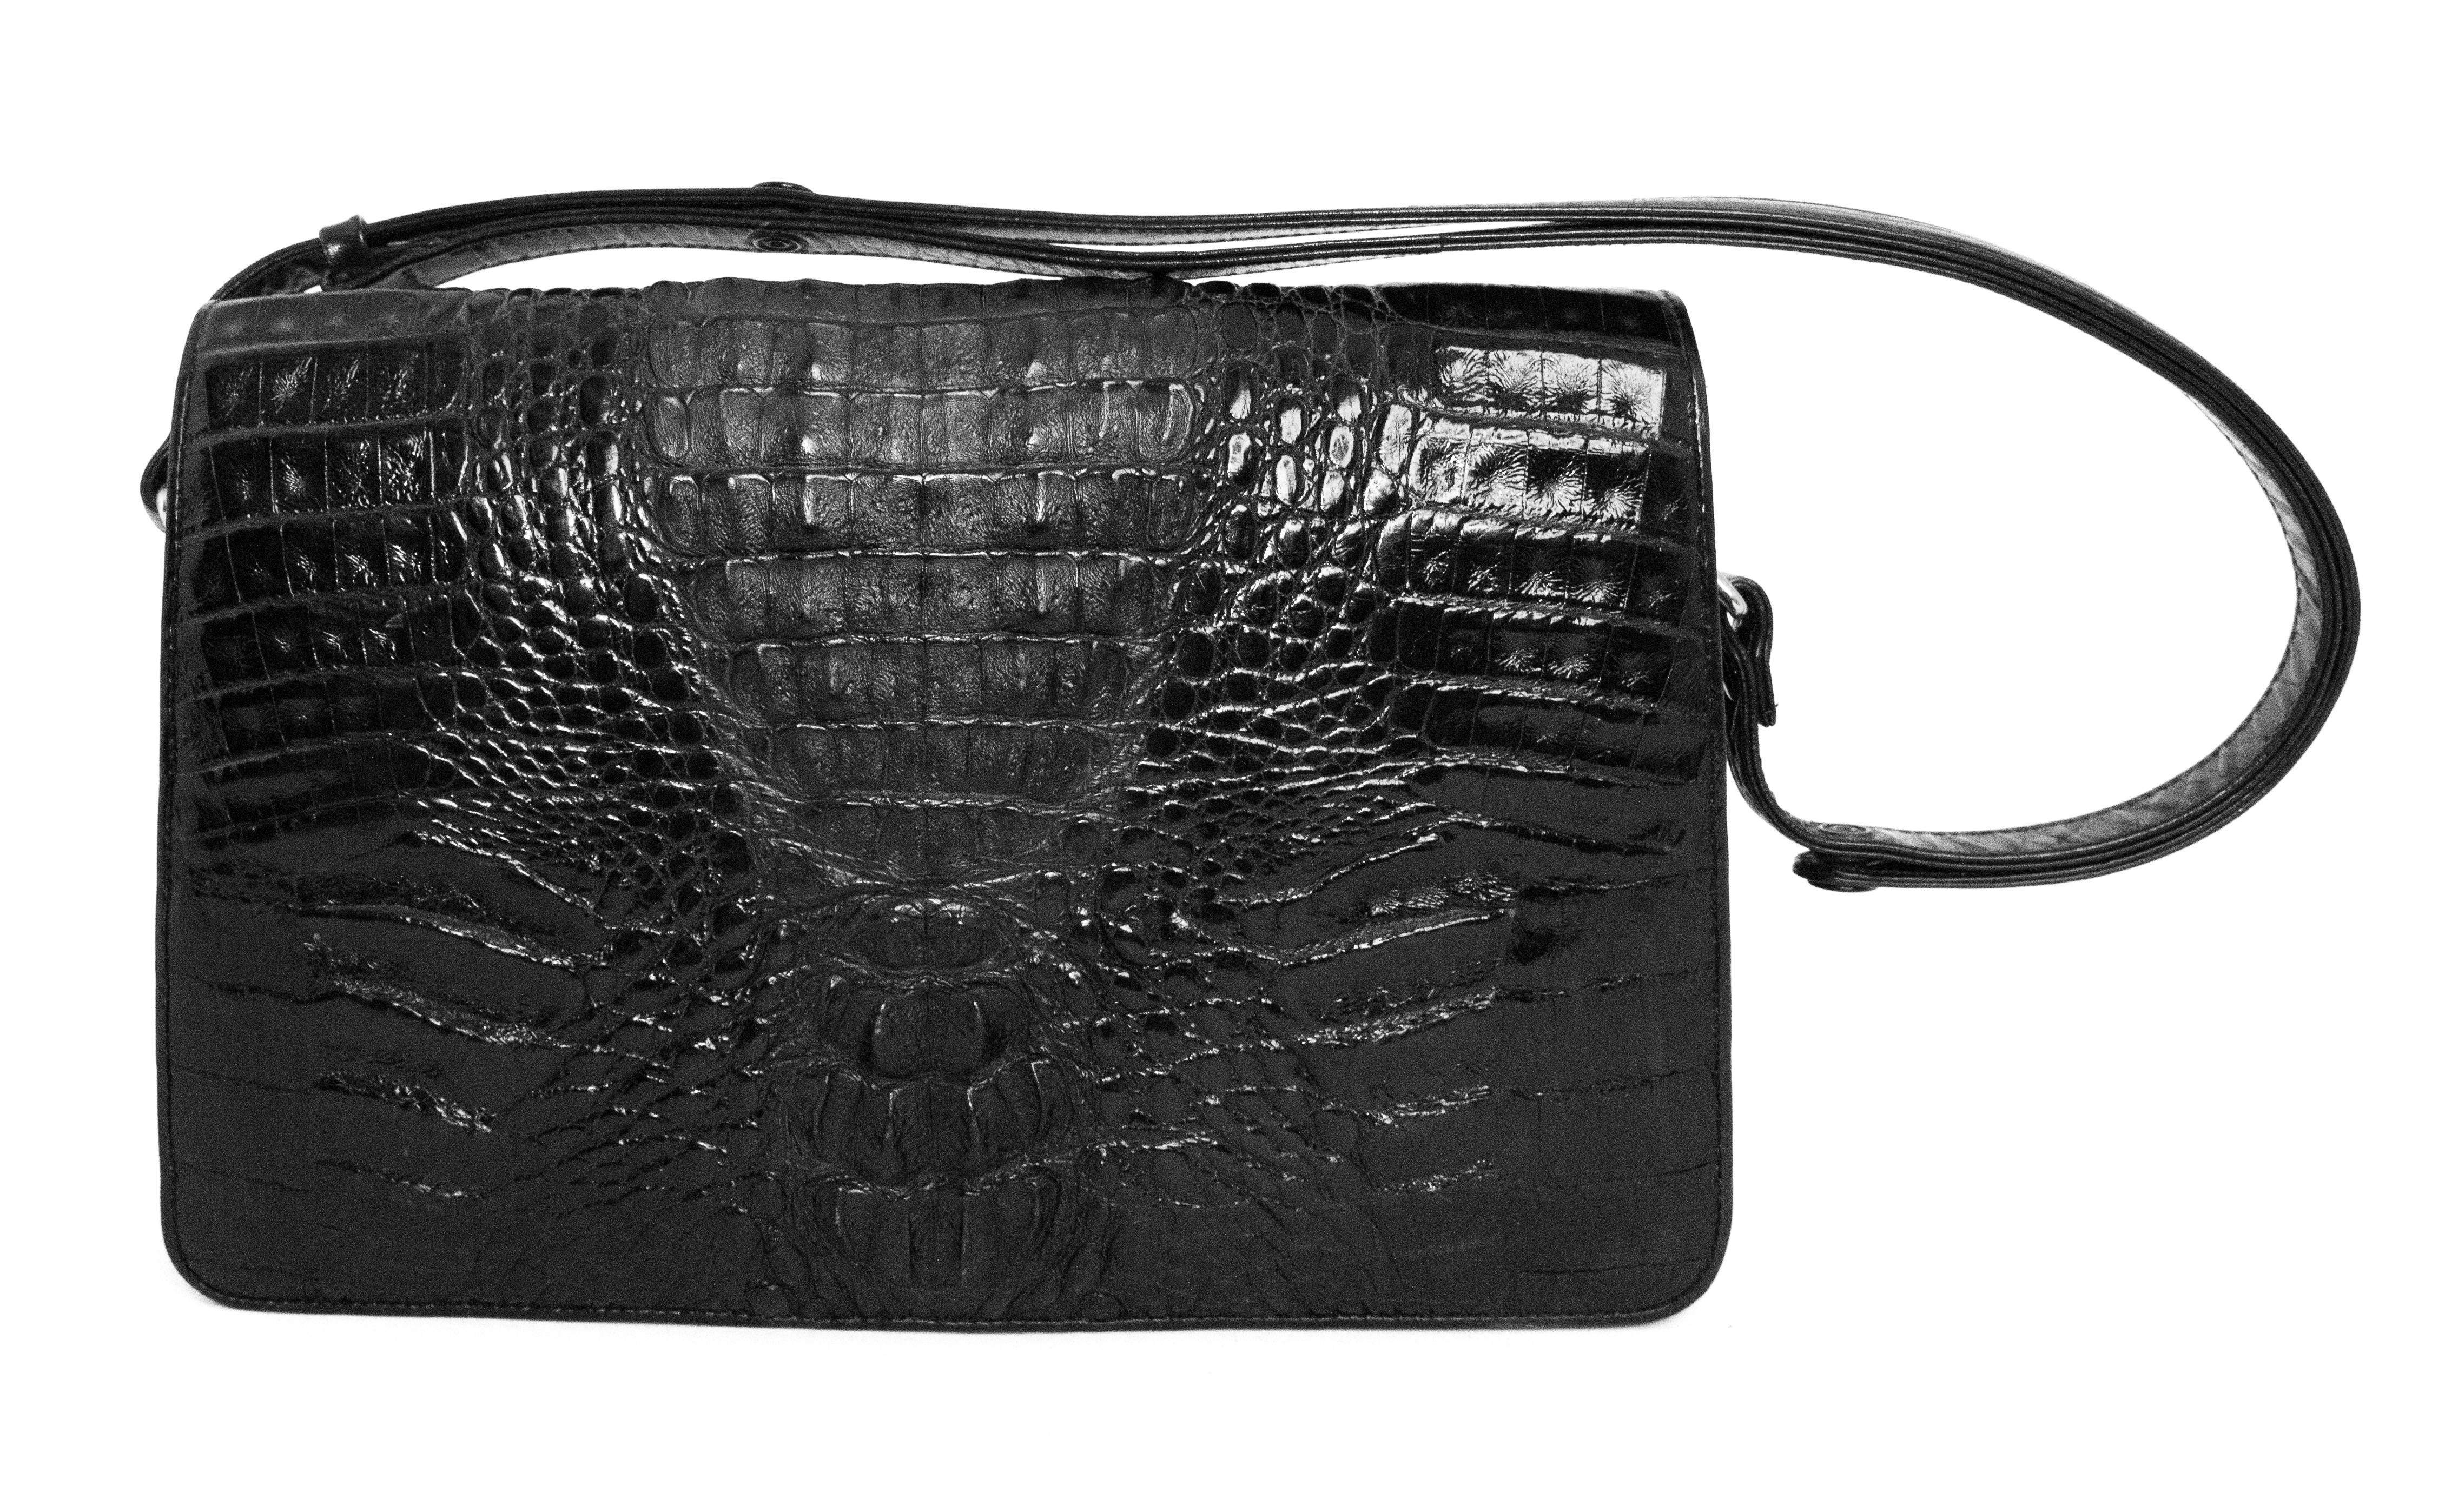 Porte-monnaie en alligator des années 1980 de couleur noire. Quincaillerie dorée. Rabat à ouverture frontale avec fermeture magnétique. Doublure en cuir. Deux compartiments principaux, un compartiment zippé, une poche latérale. Les fermetures à